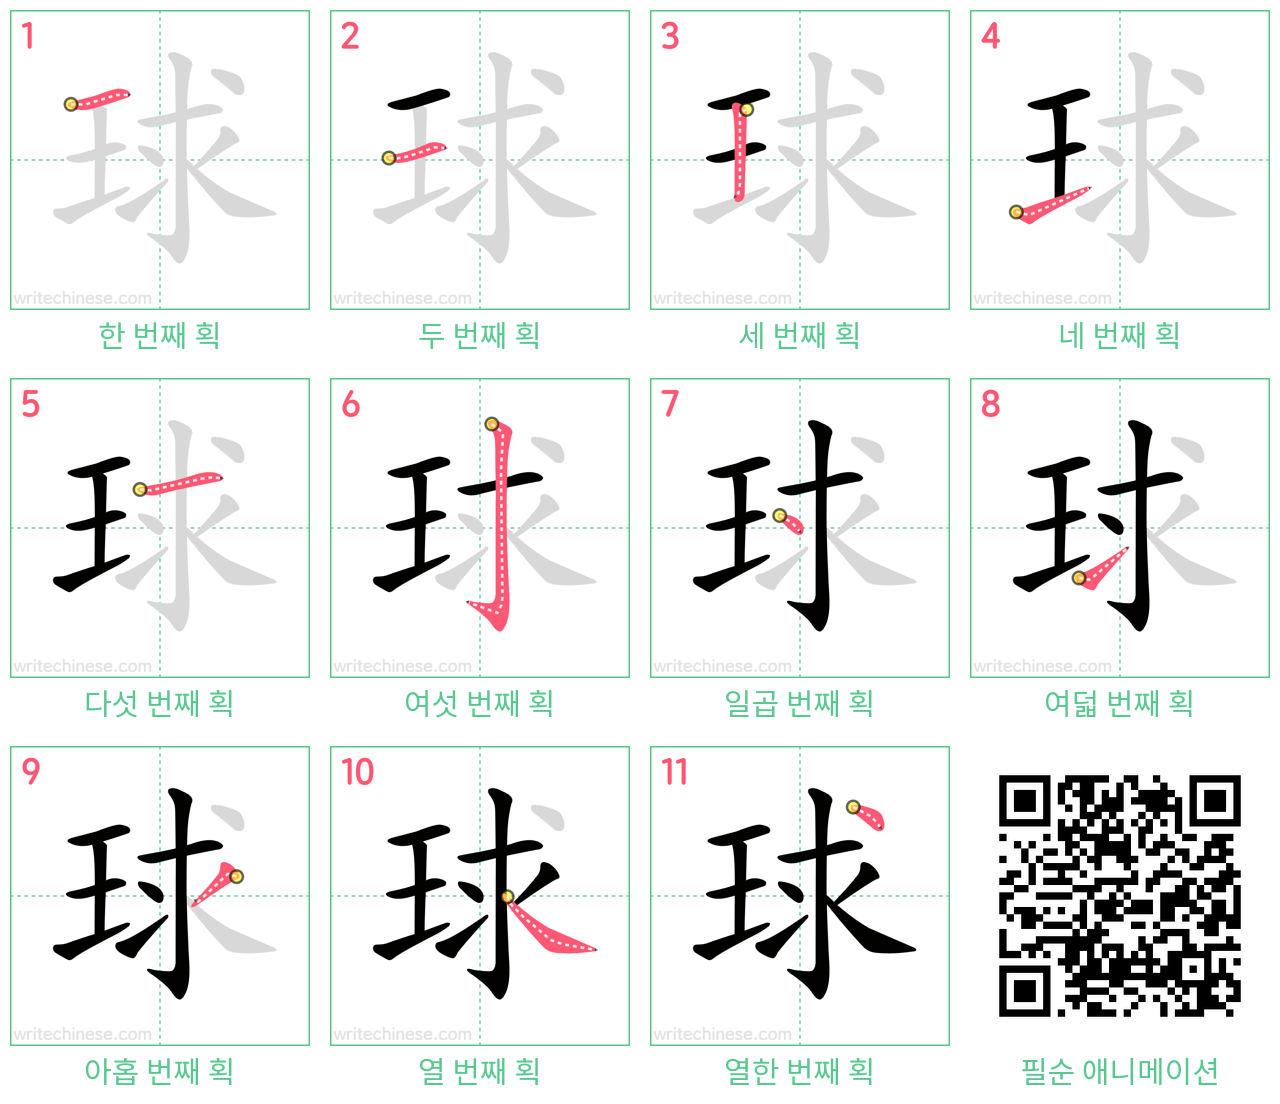 球 step-by-step stroke order diagrams